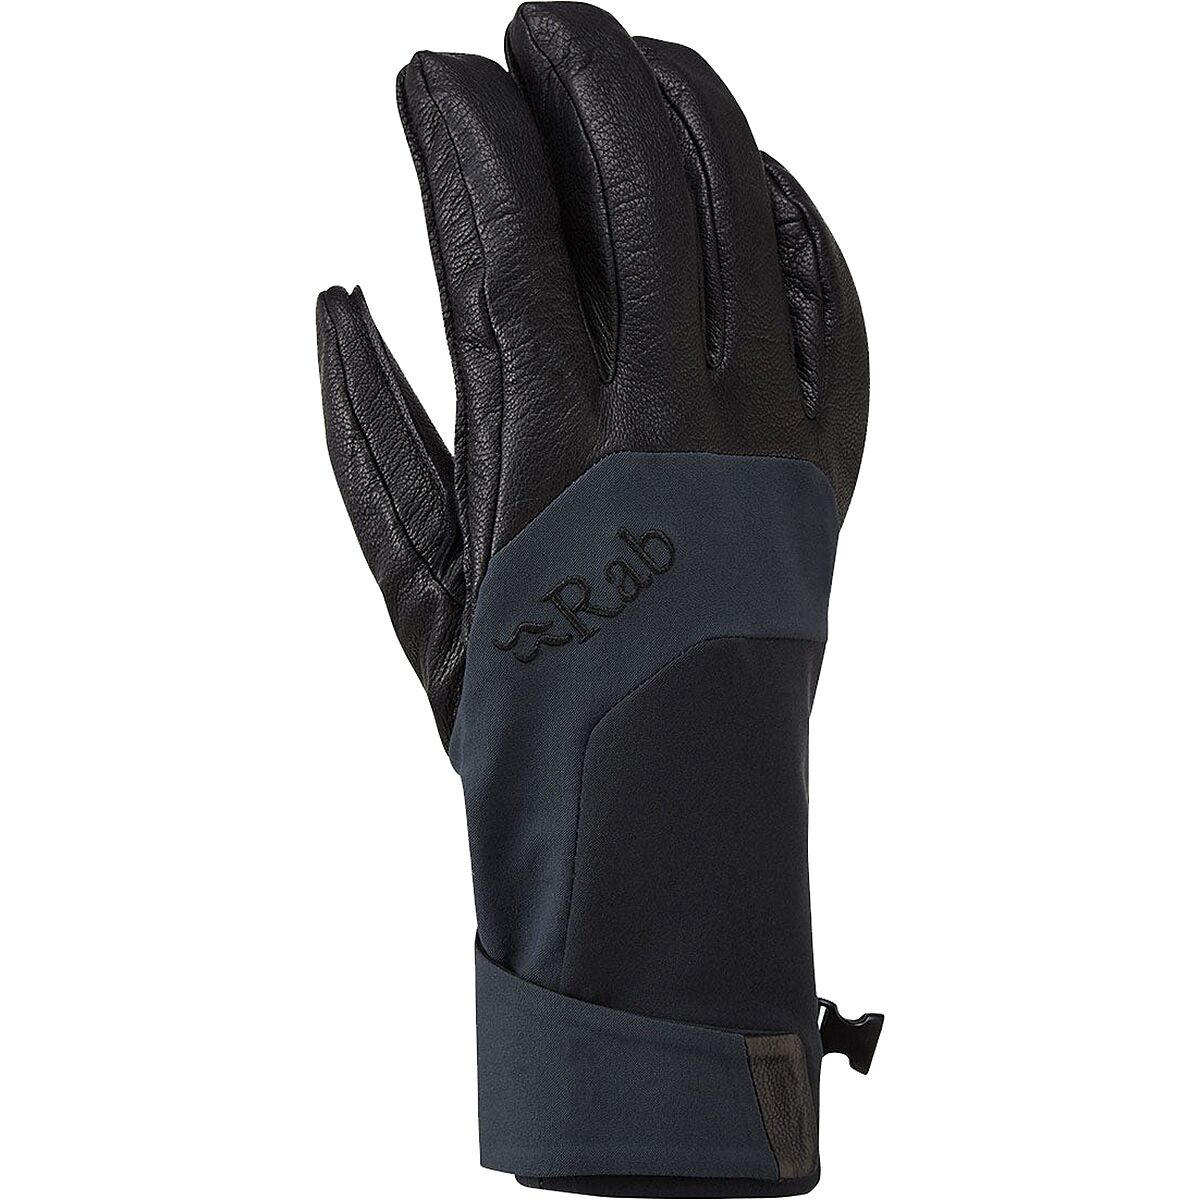 Rab Khroma Tour GORE-TEX INFINIUM Glove - Men's Black